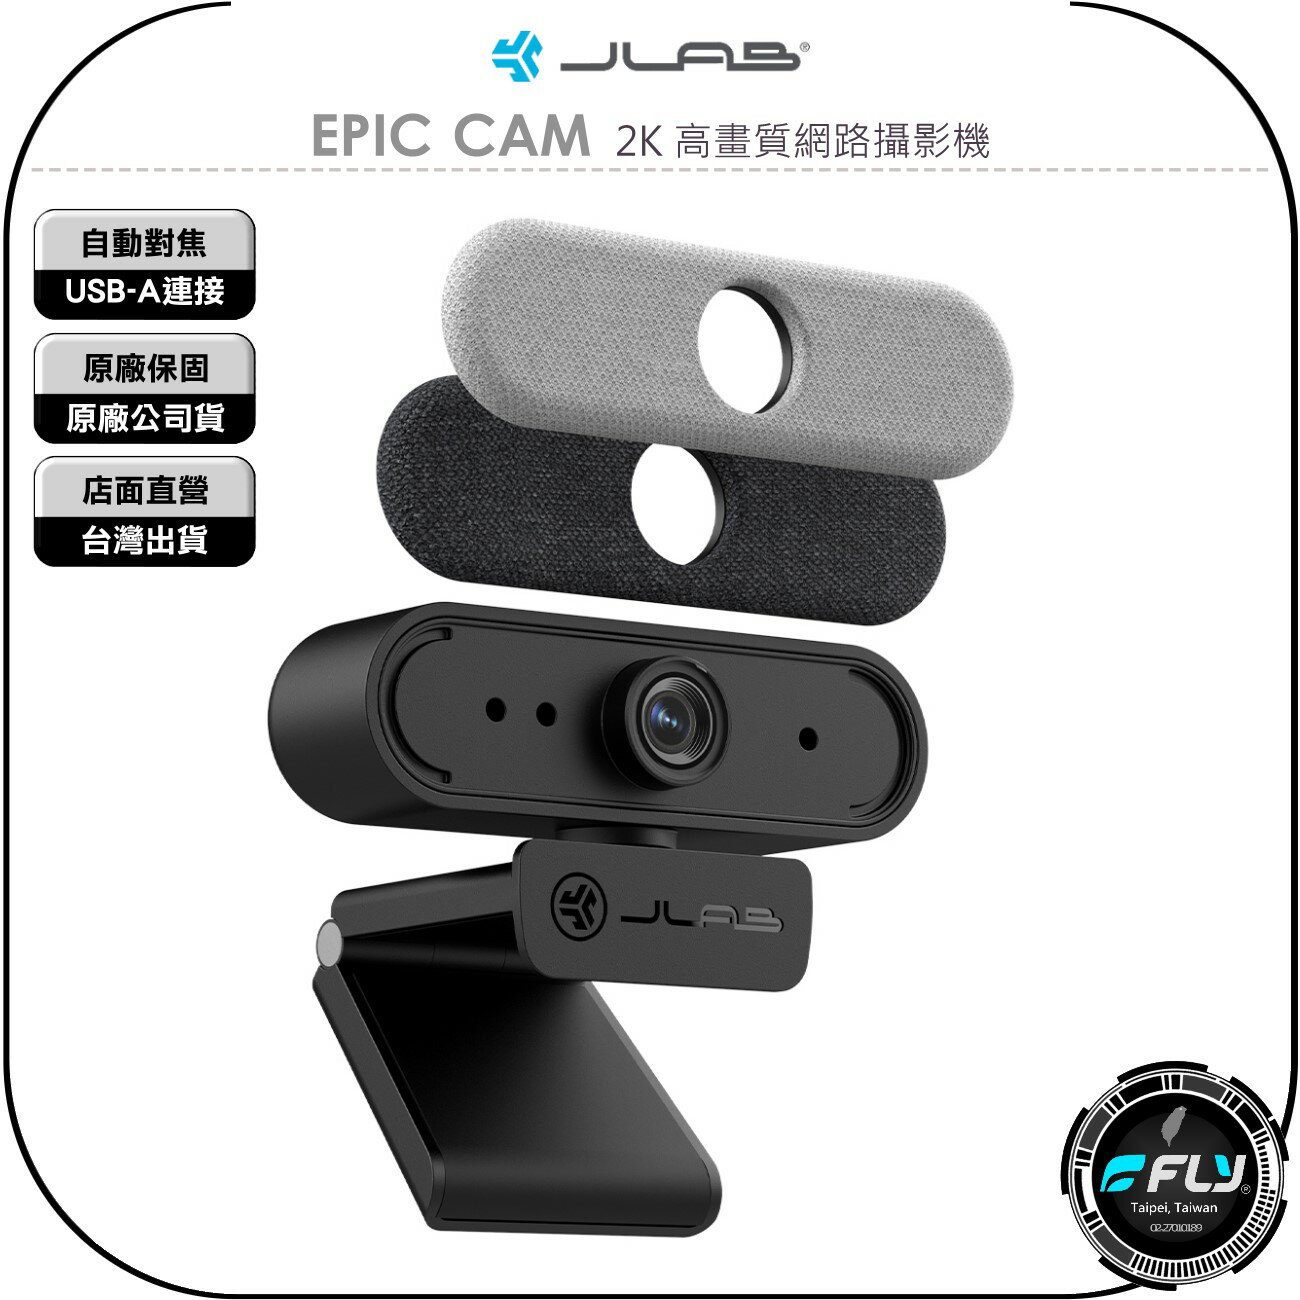 《飛翔無線3C》JLab EPIC CAM 2K 高畫質網路攝影機◉公司貨◉自動對焦◉隨插即用◉USB-A連接